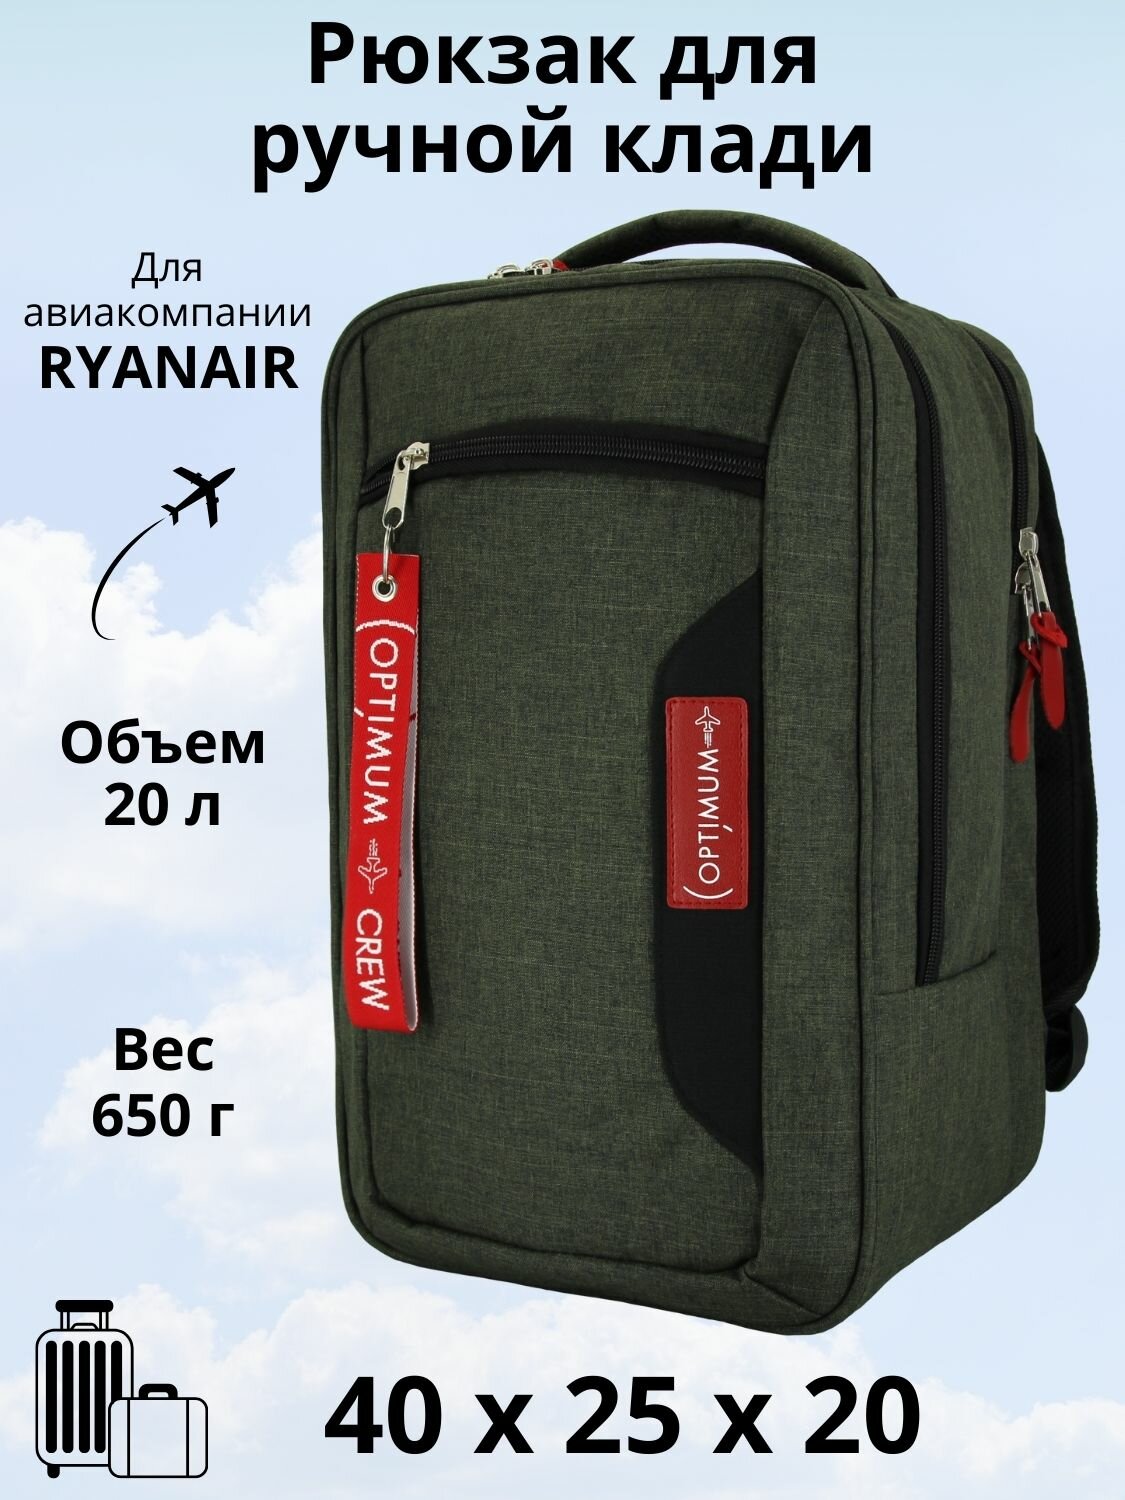 Рюкзак для путешествий дорожный ручная кладь 40х25х20 в самолет Ryanair, хаки